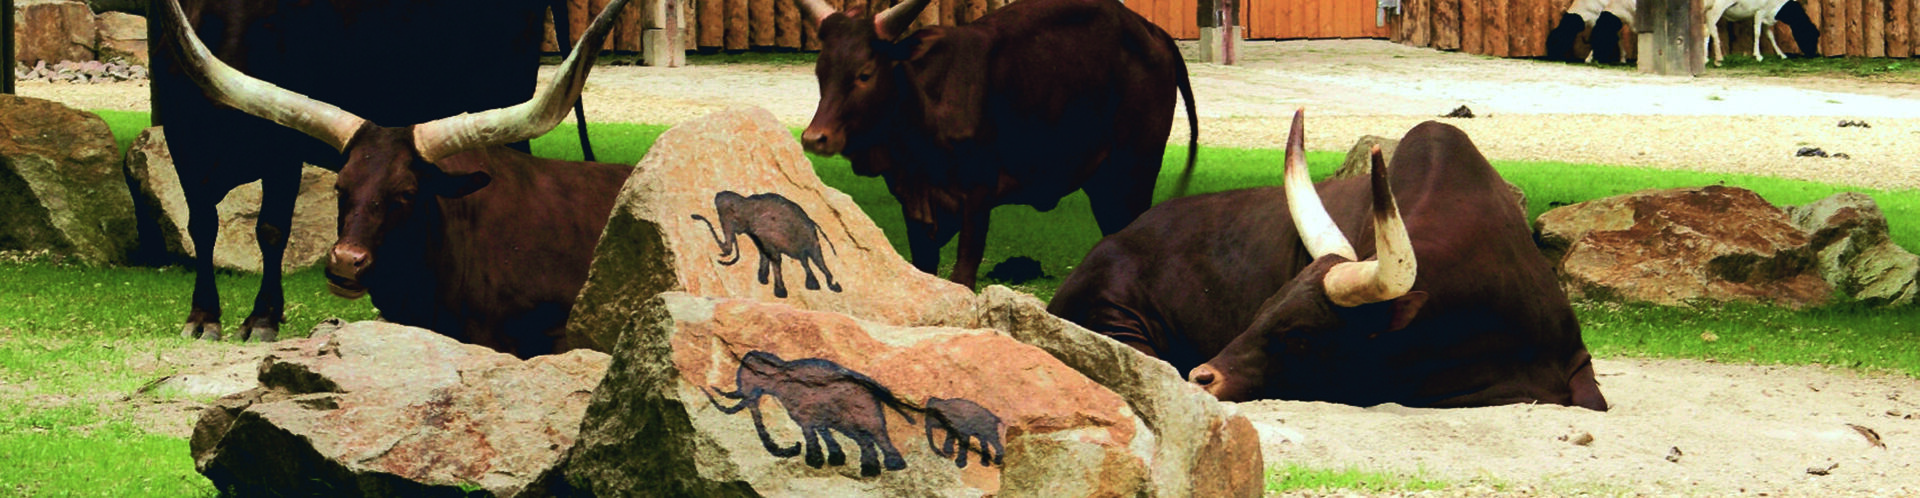 Watussi-Rinder auf der Afrika-Anlage im Straubinger Tiergarten